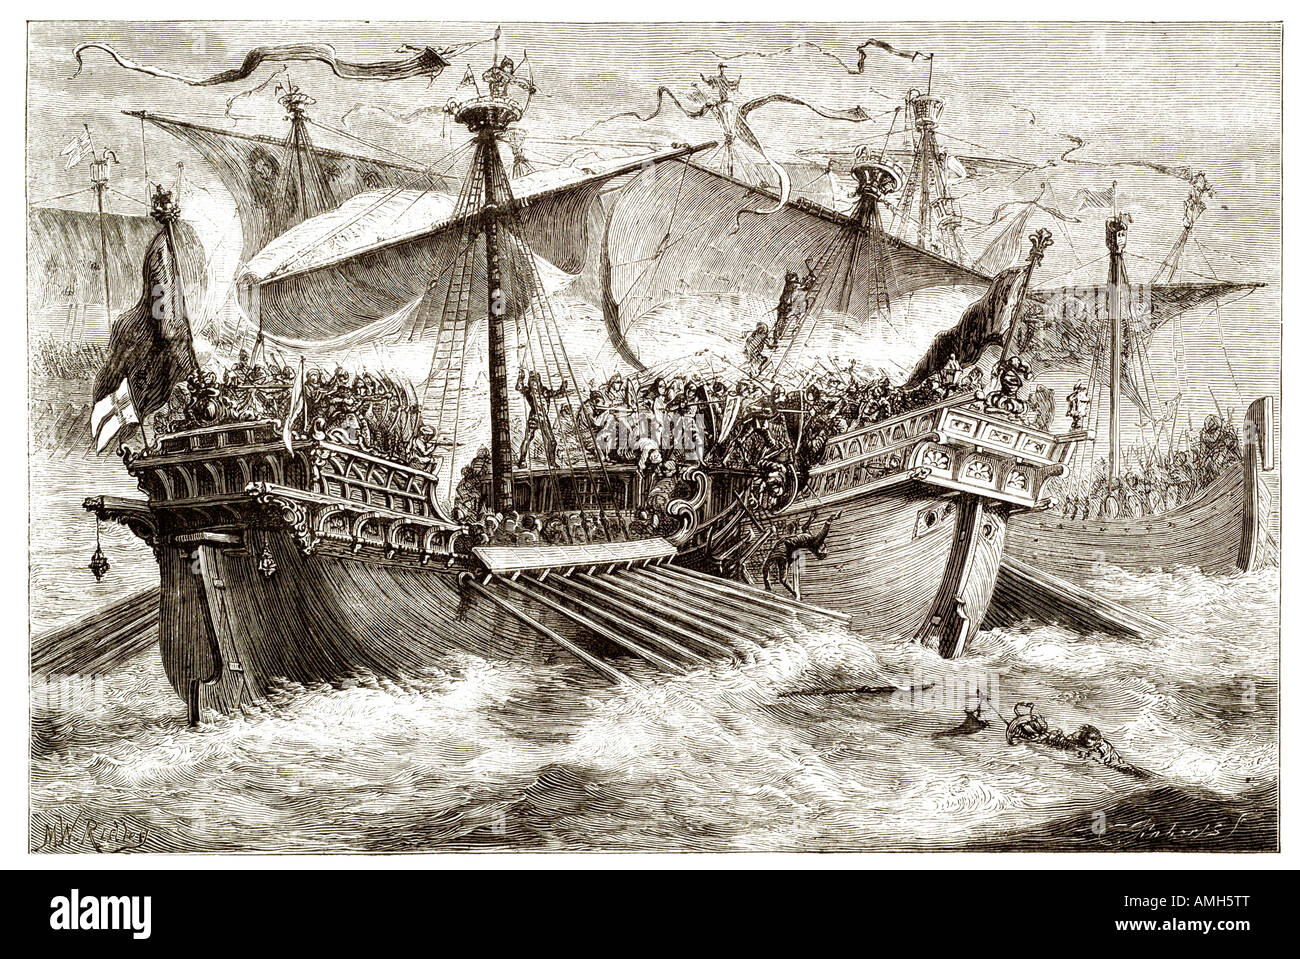 Schlacht von Dover naval battle 1217 englische Flotte Hubert de Burgh Eustace Mönch Segeln Taktik ersten Barone Krieg Prinz Lou Stockfoto